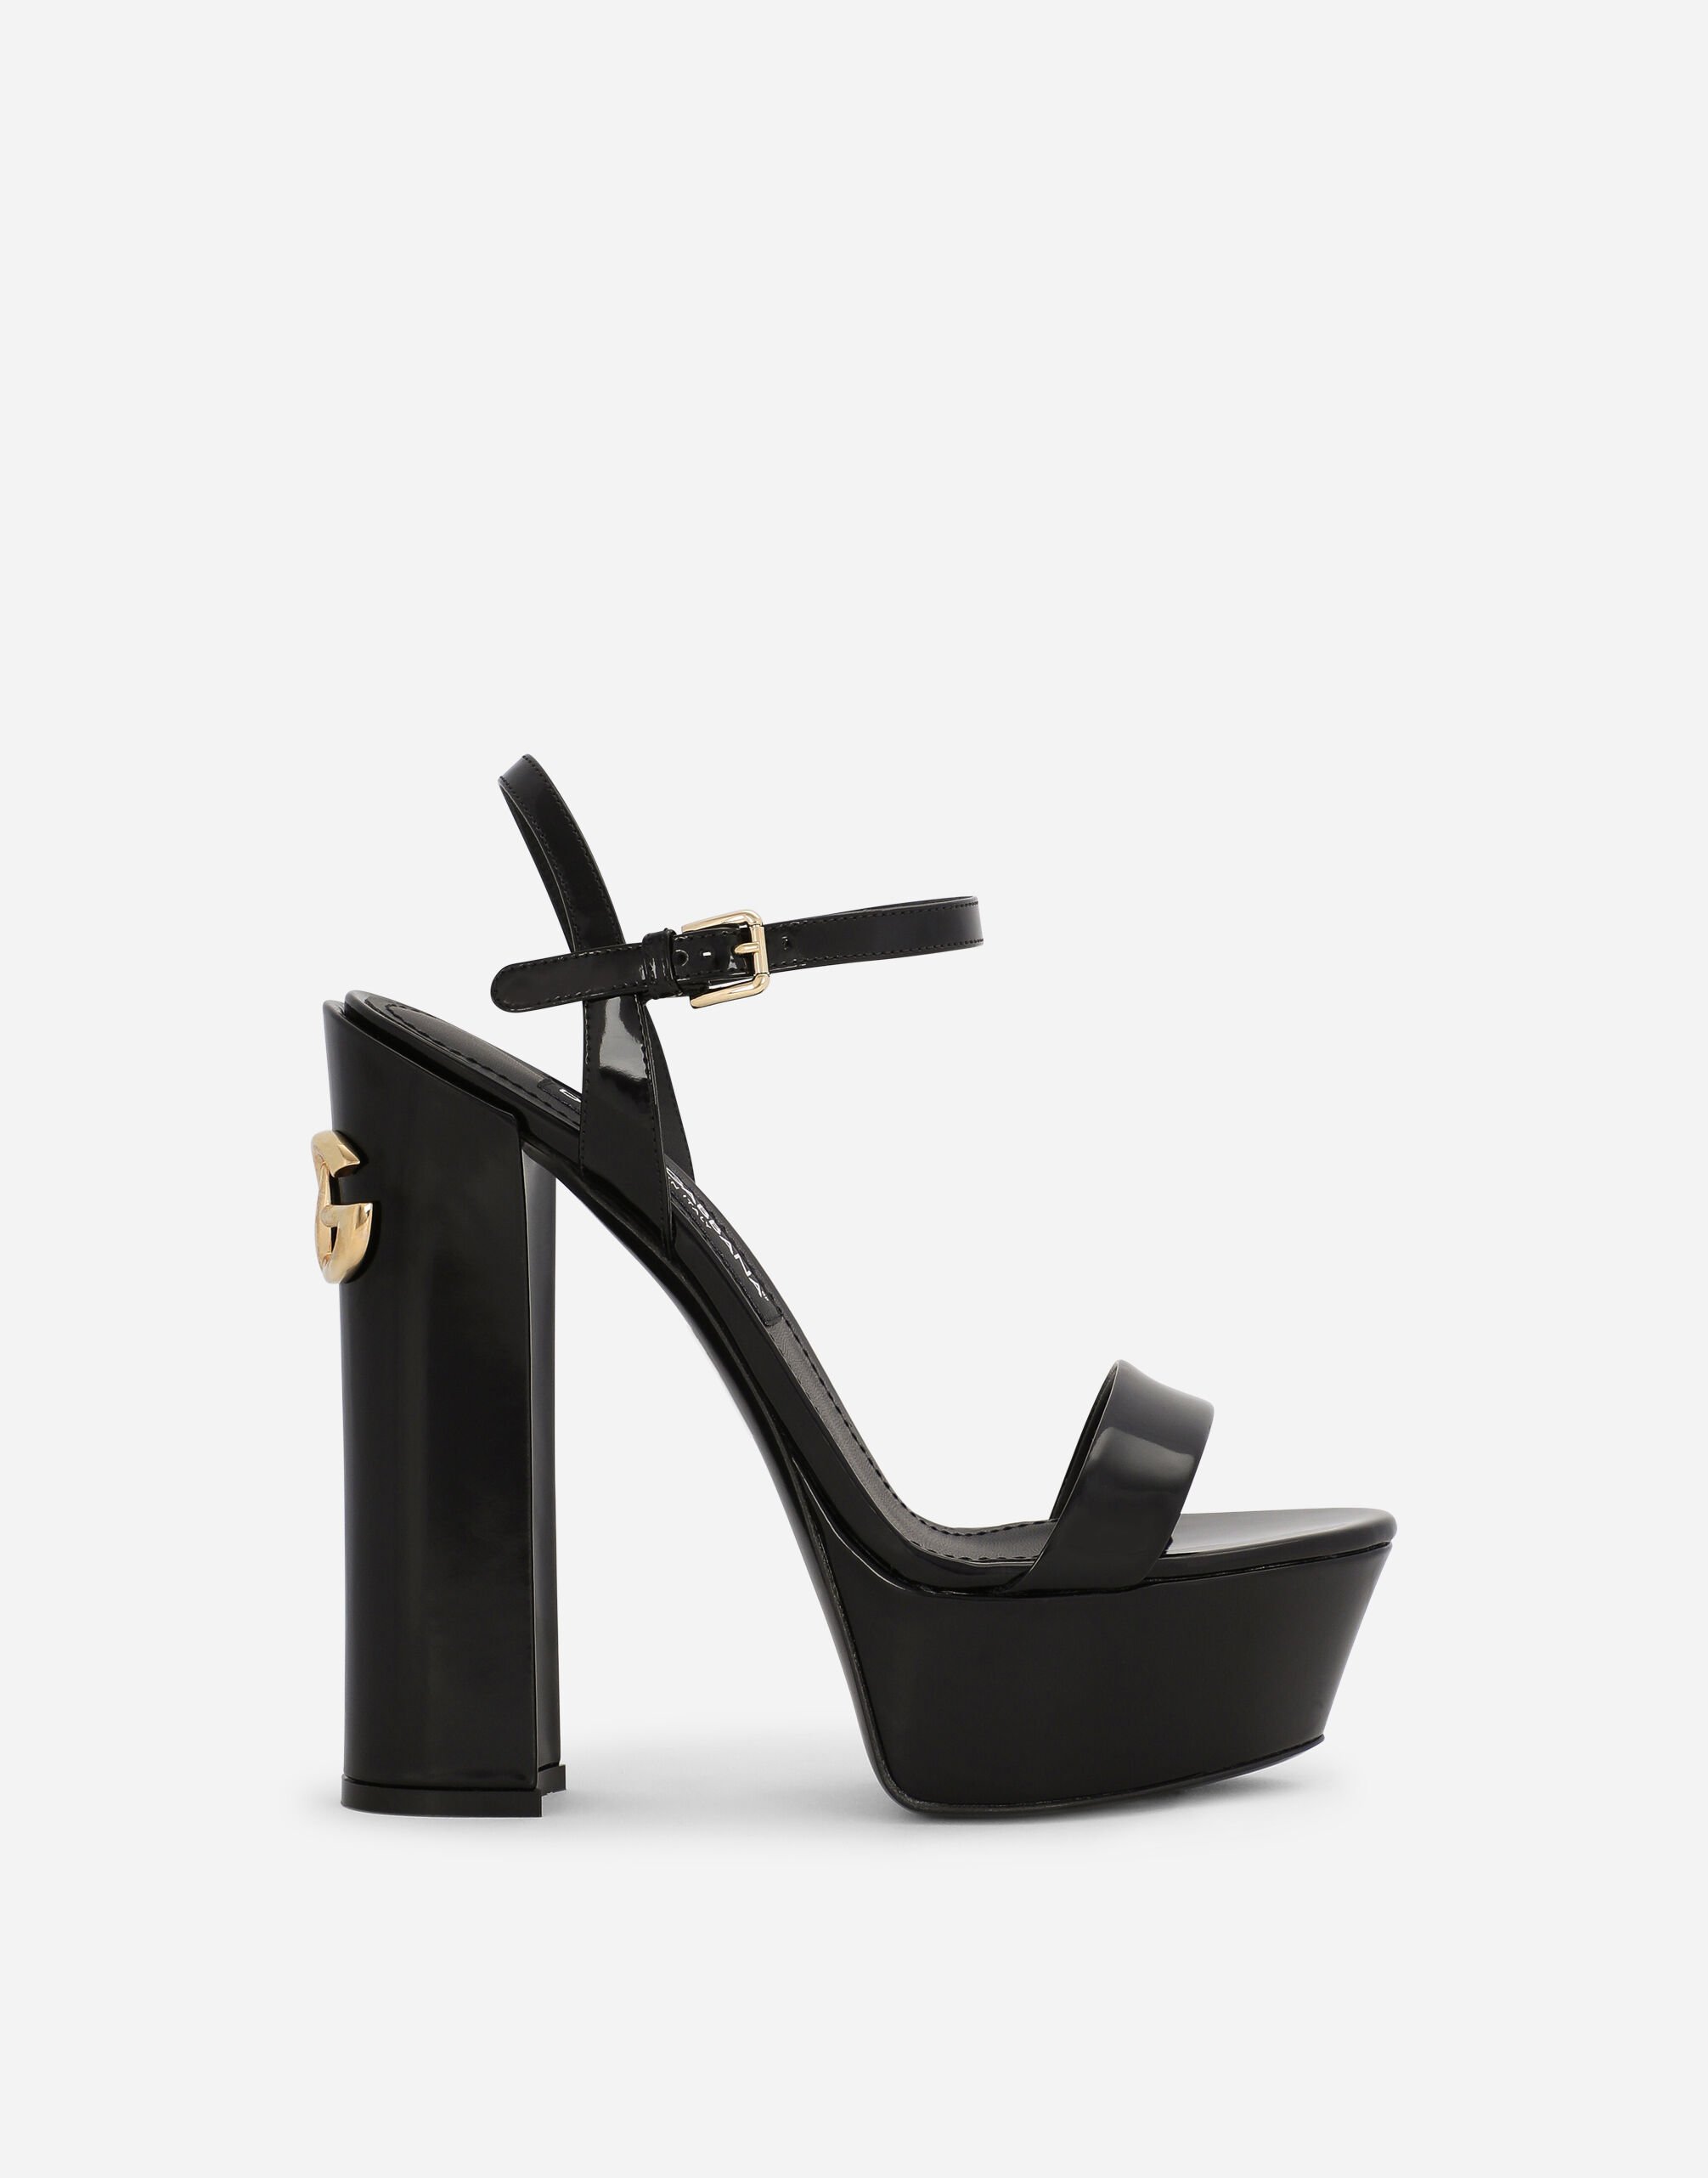 Dolce & Gabbana Polished calfskin platform sandals Black VG443FVP187